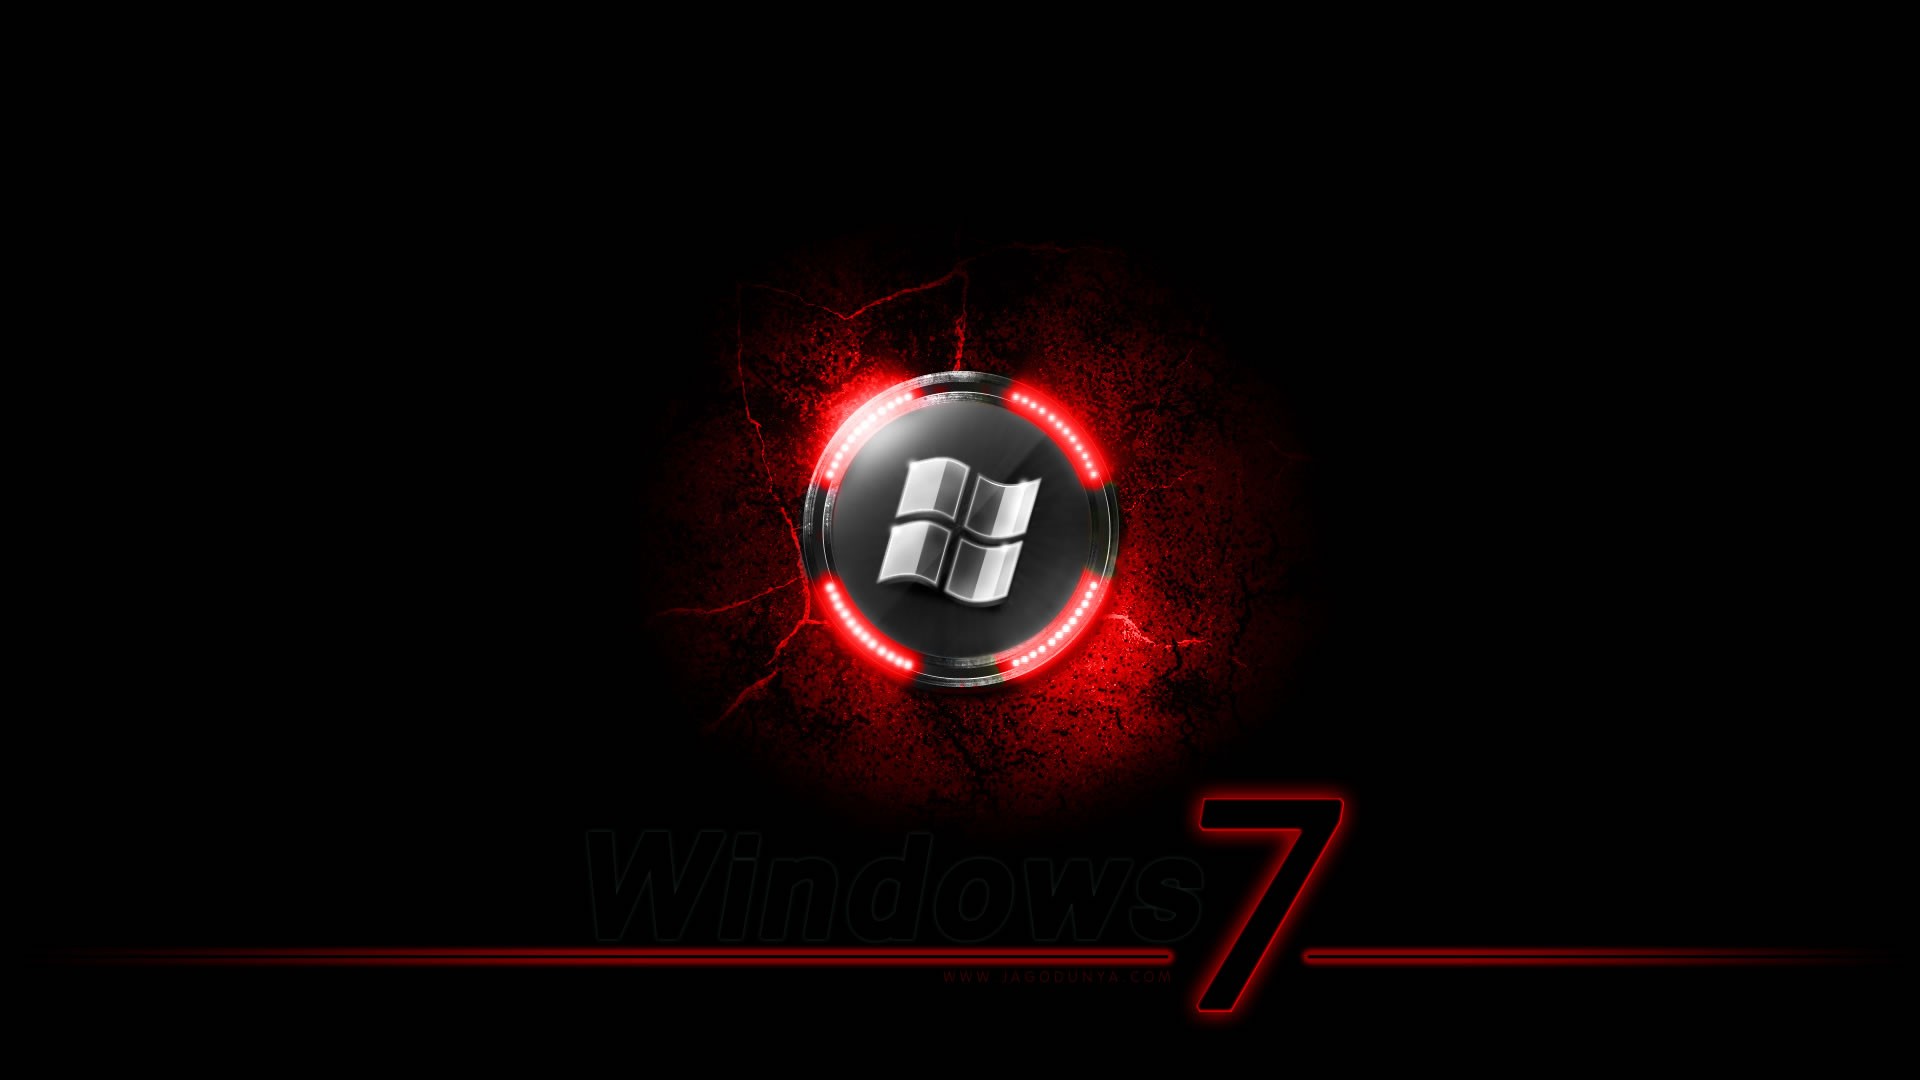 Windows 7 logo for desktop